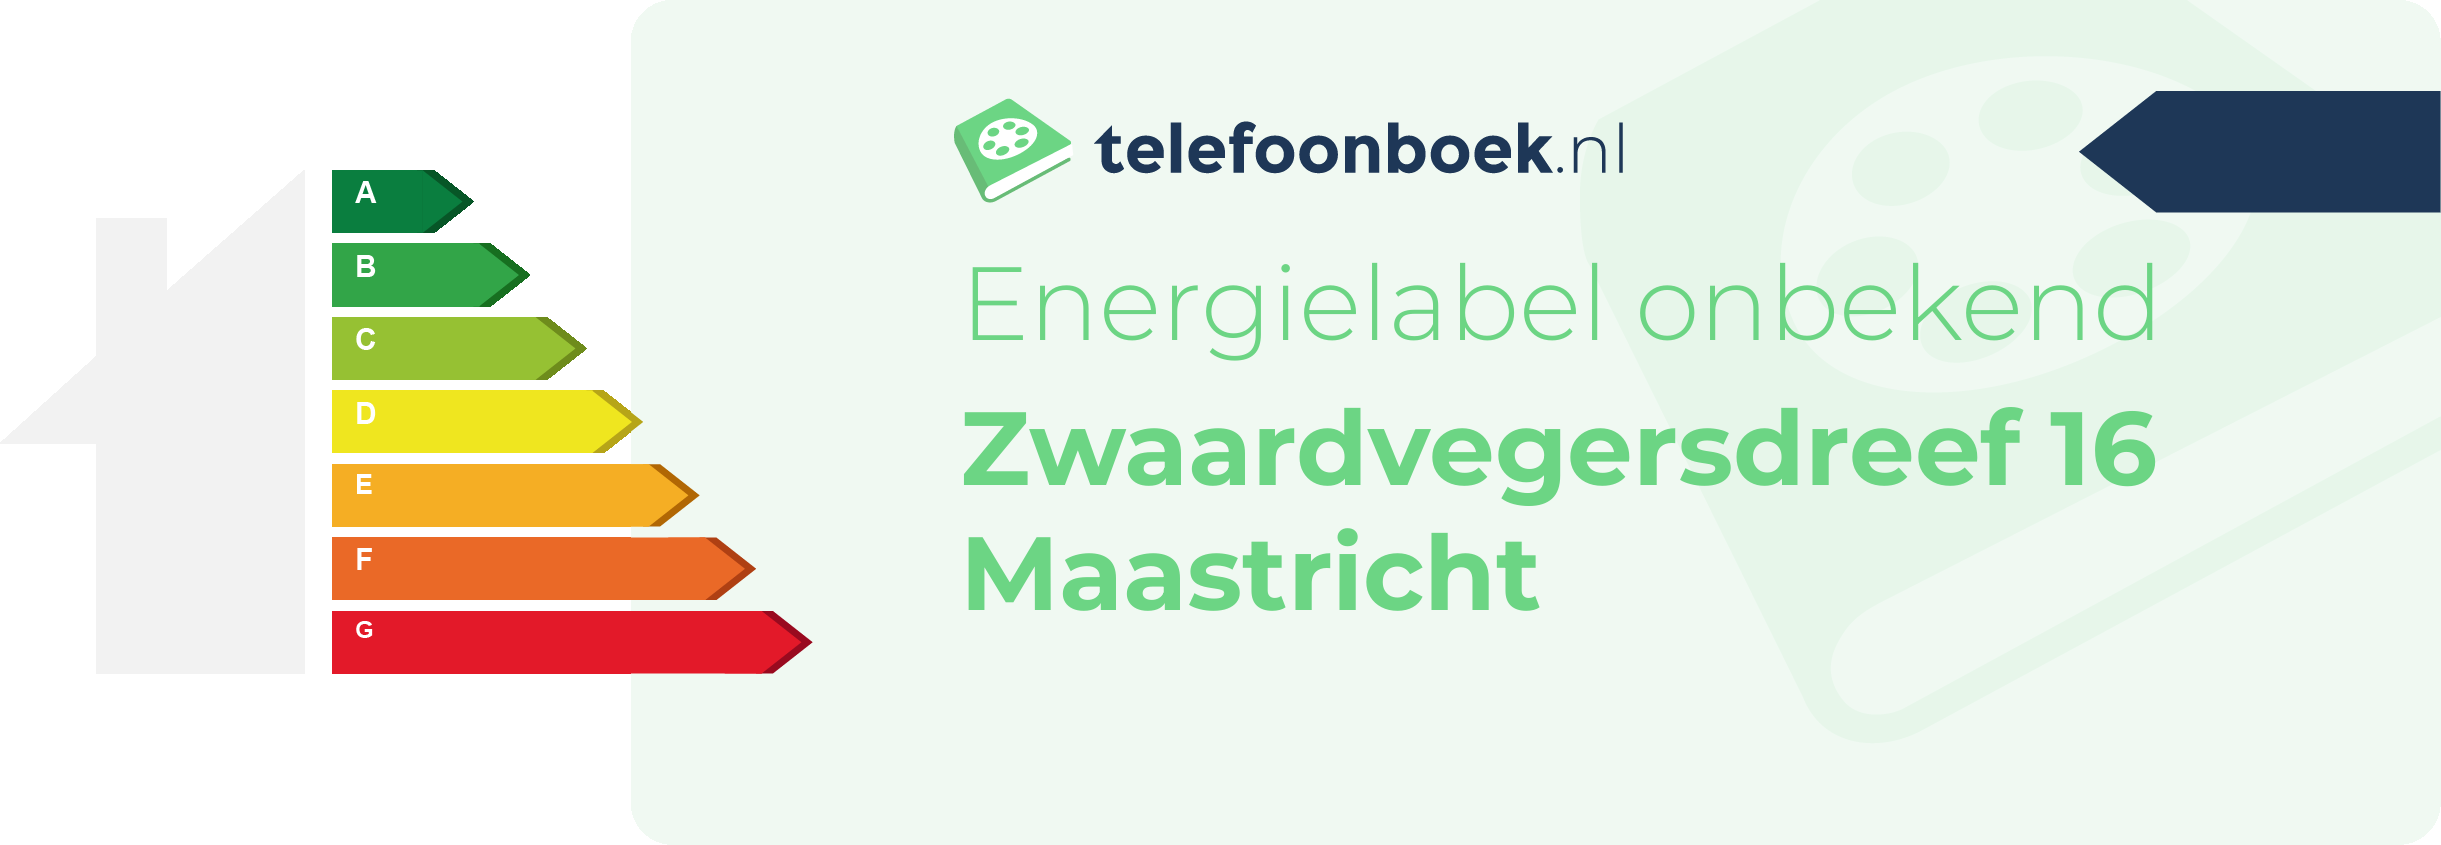 Energielabel Zwaardvegersdreef 16 Maastricht